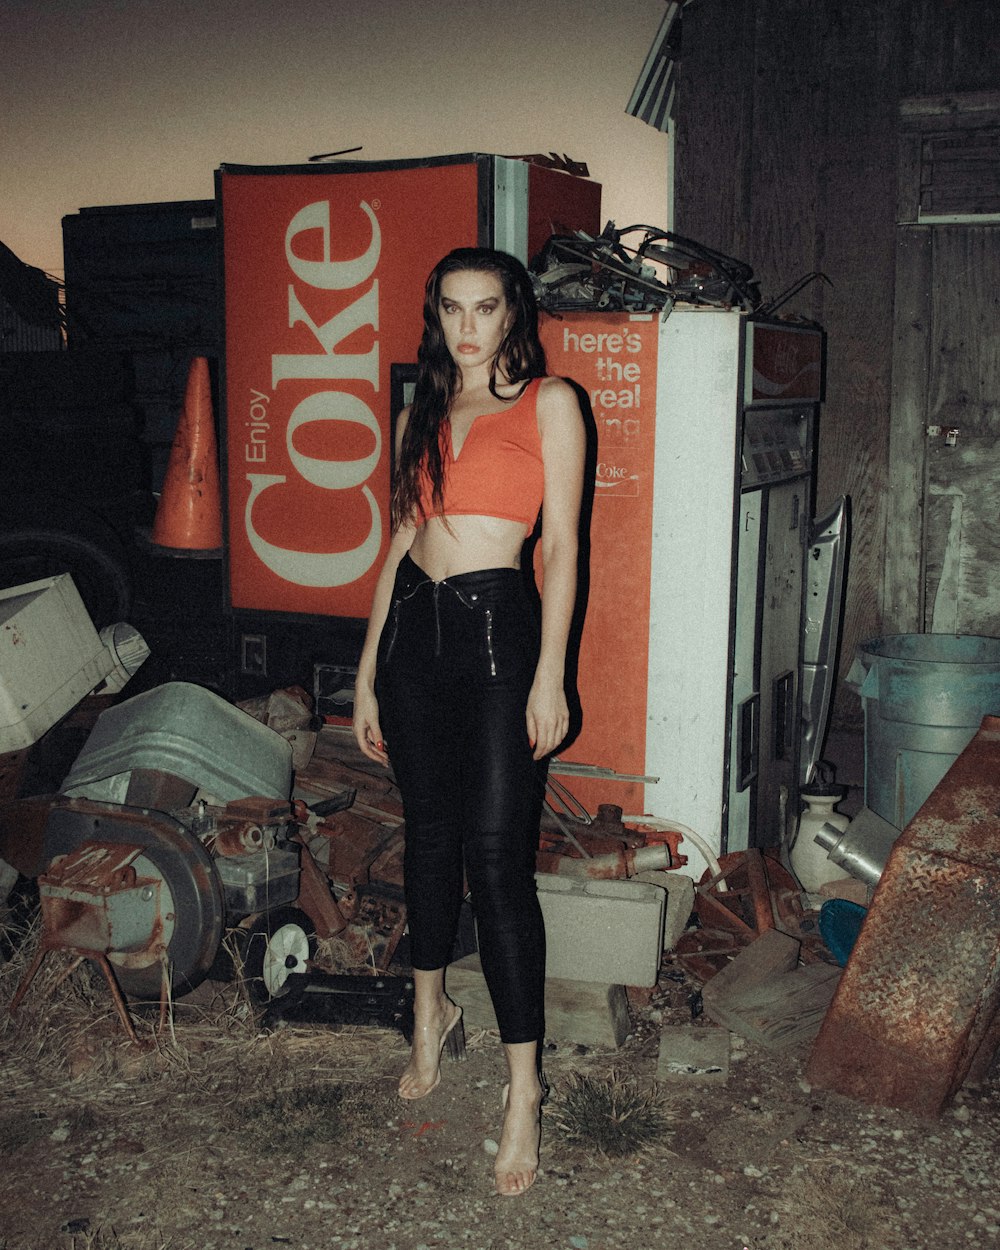 Frau in schwarzem Tanktop und schwarzer Leggings neben Coca-Cola-Box